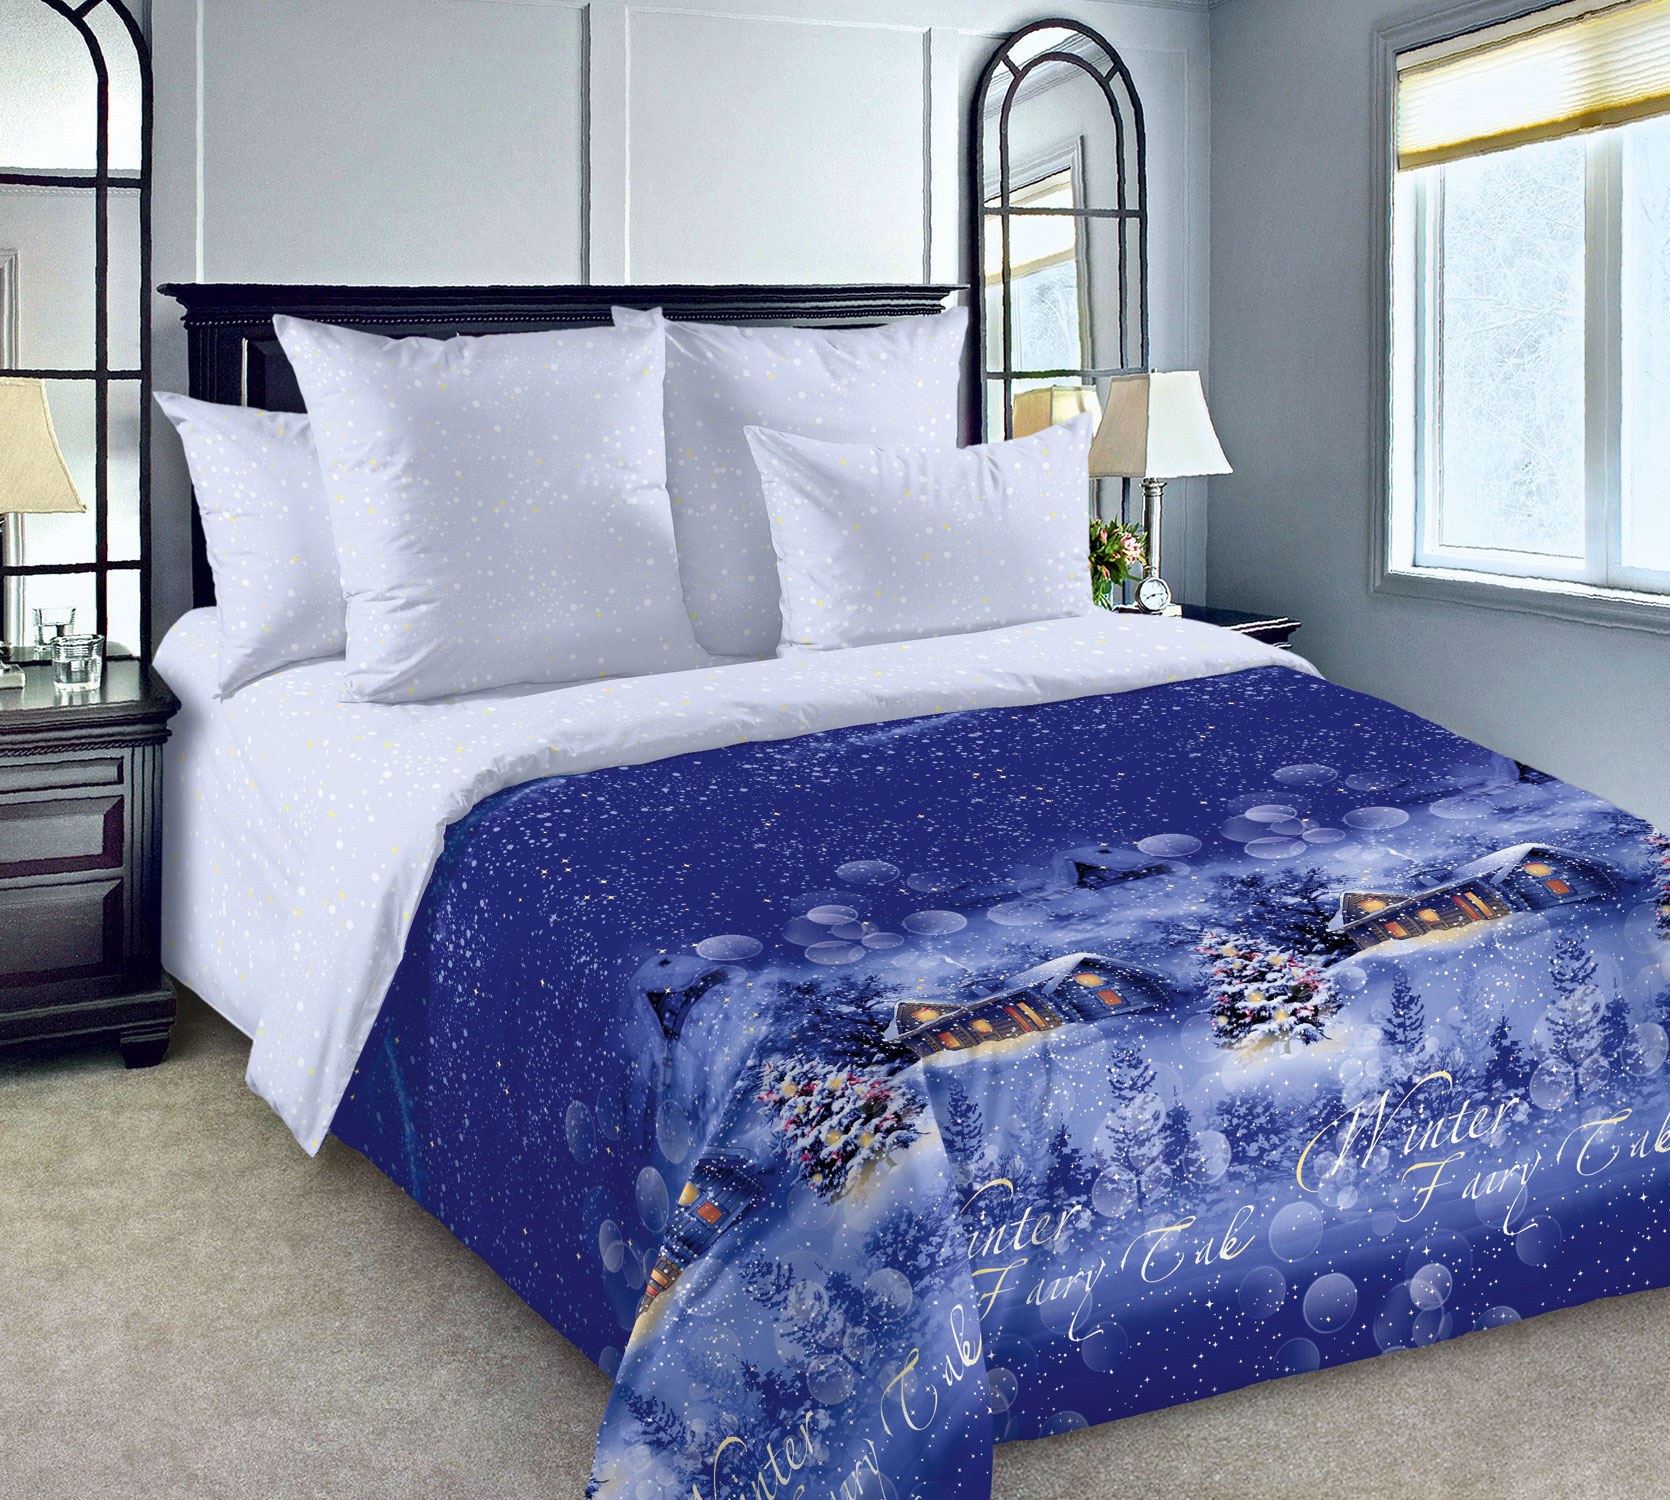 фото Постельное белье сказка о зиме 1 син 3250пн 2-спальное с европростыней текс-дизайн